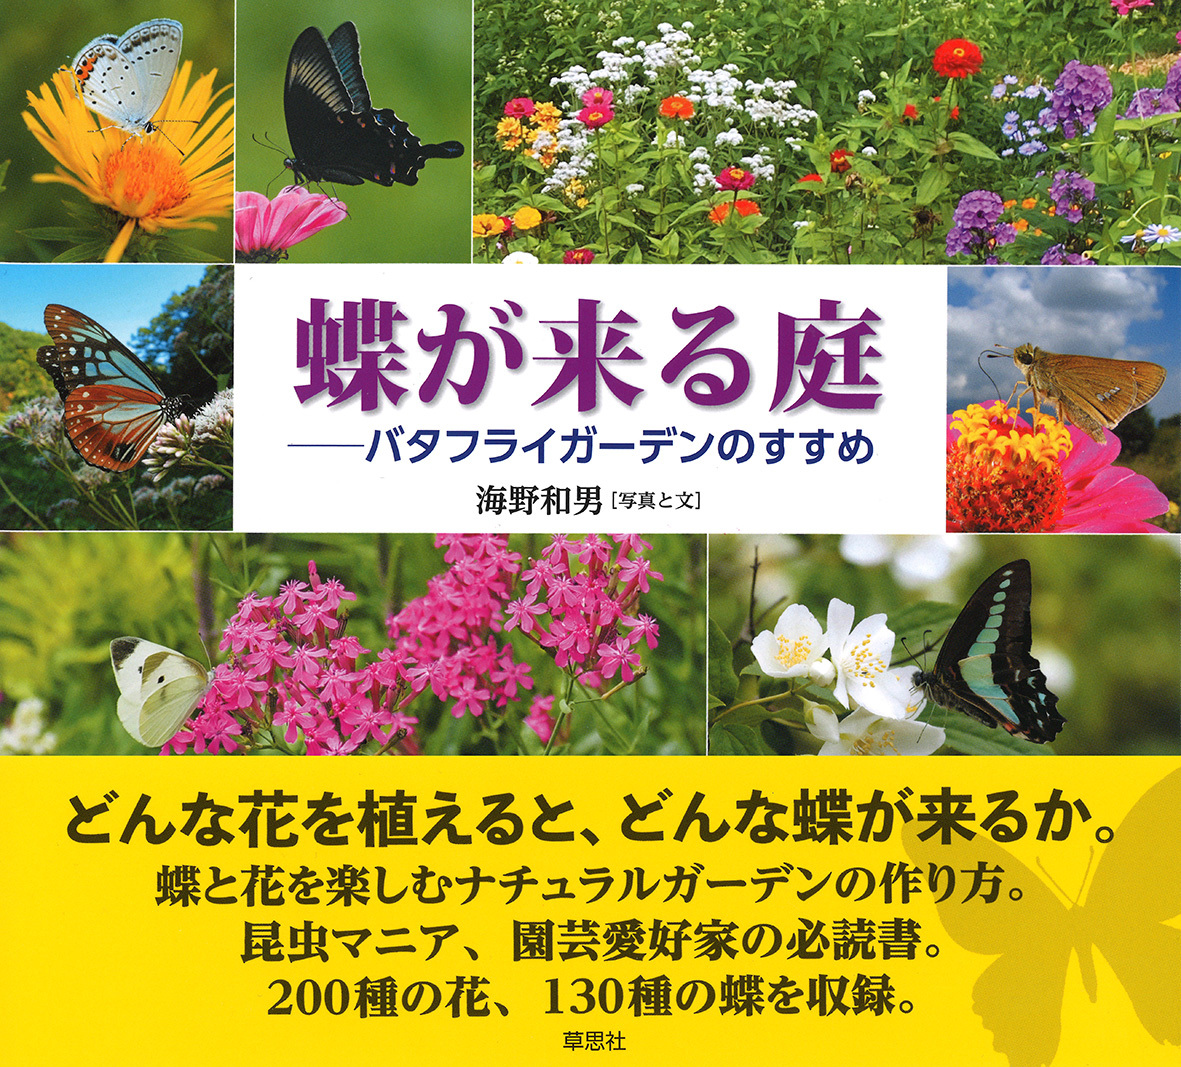 蝶が来る庭の商品画像